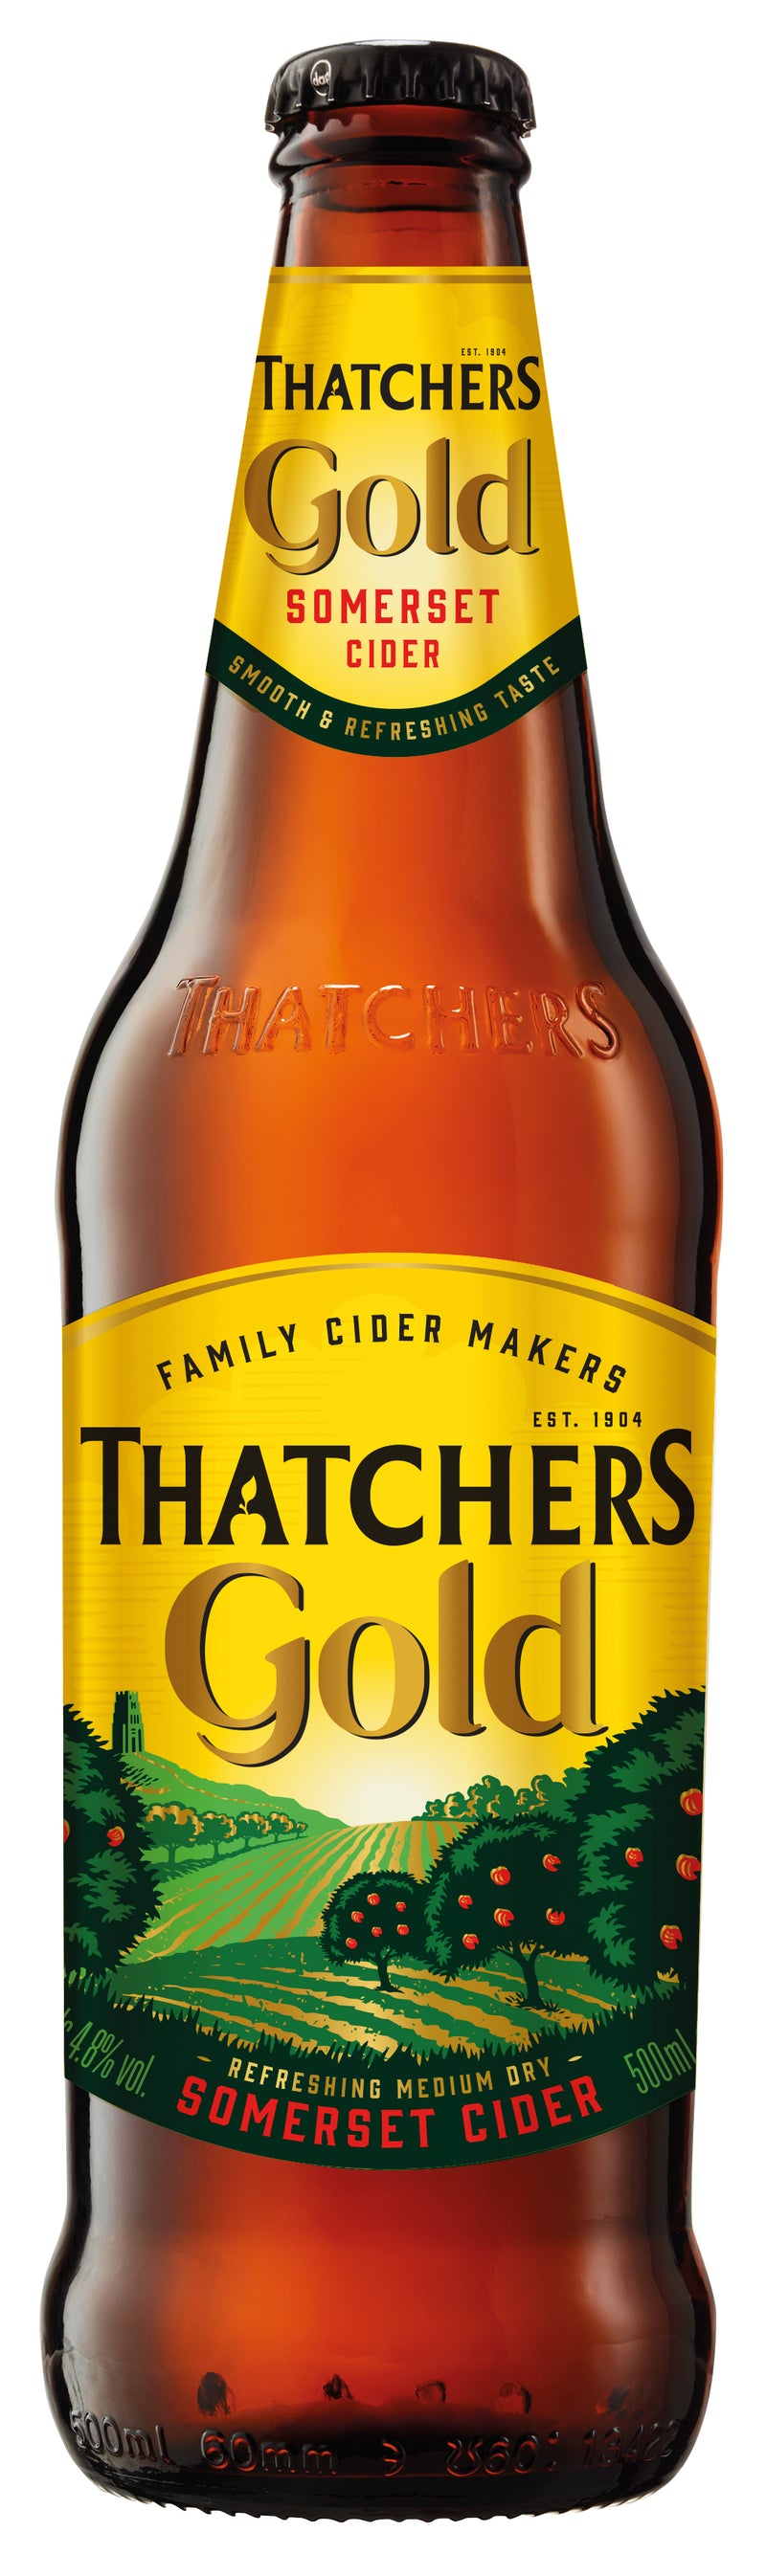 Thatchers Gold Cider 6x500ml - Bottle